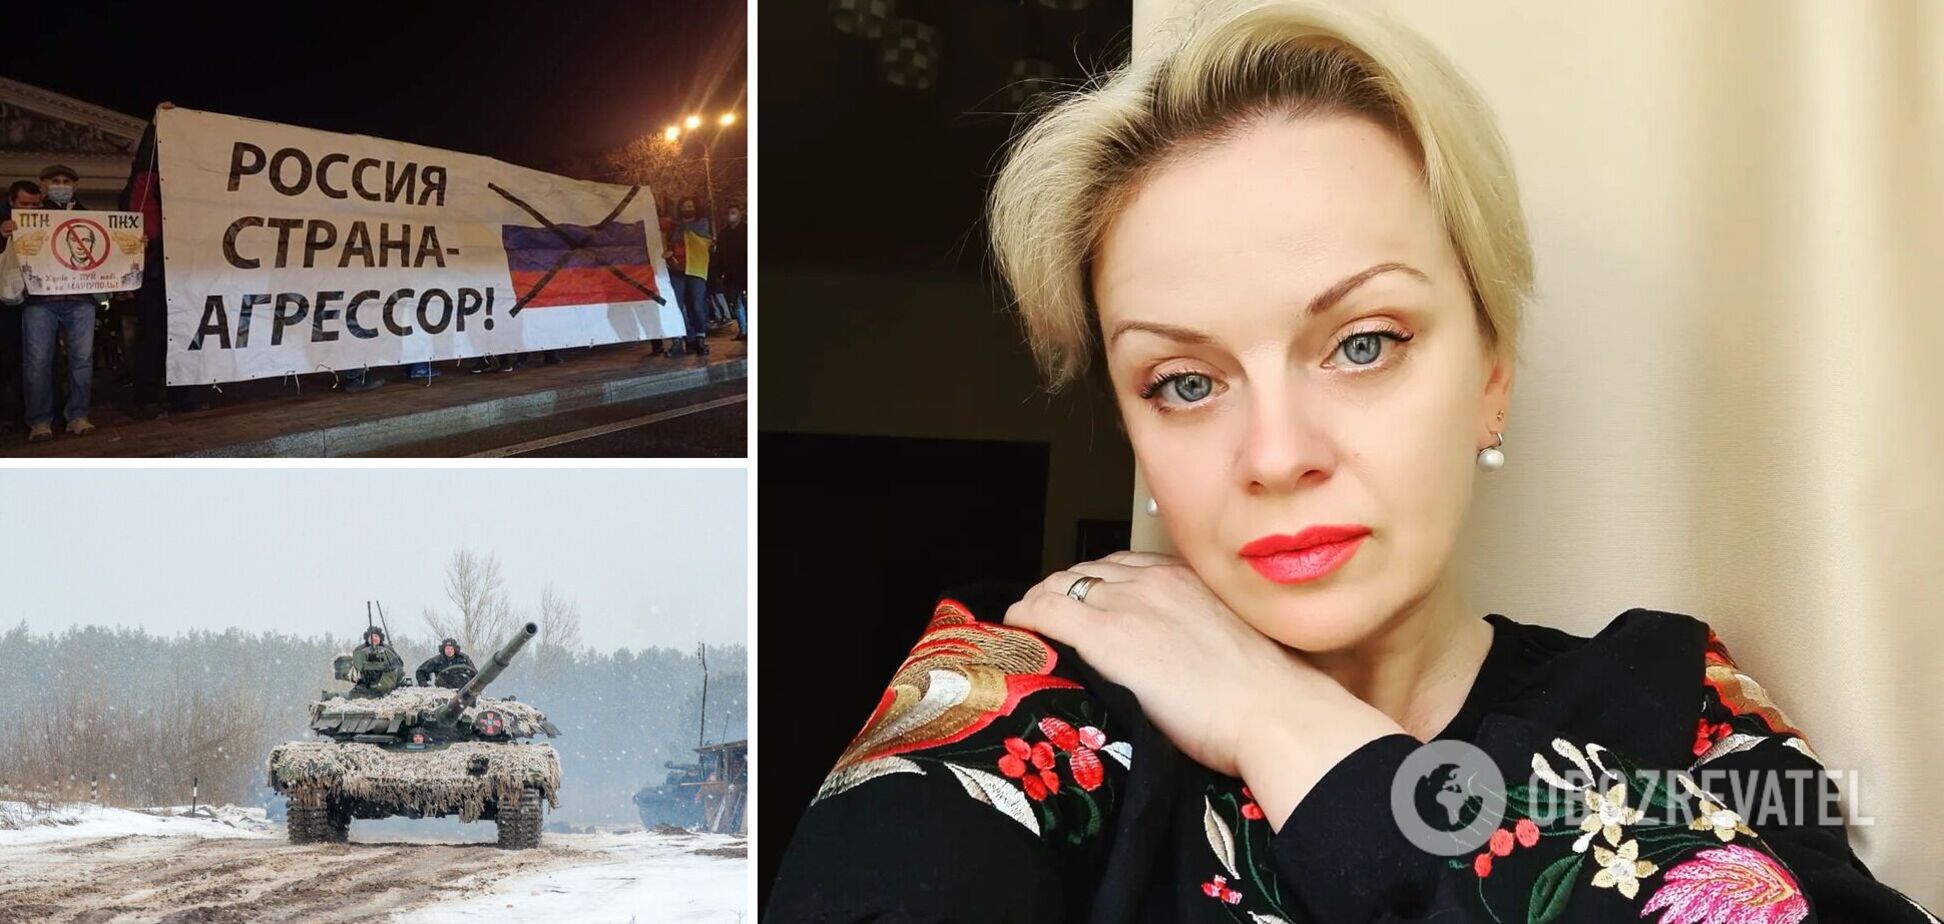 Ирма Витовская объяснила, как приблизить победу Украины, и предложила приобщить к этому адекватных россиян